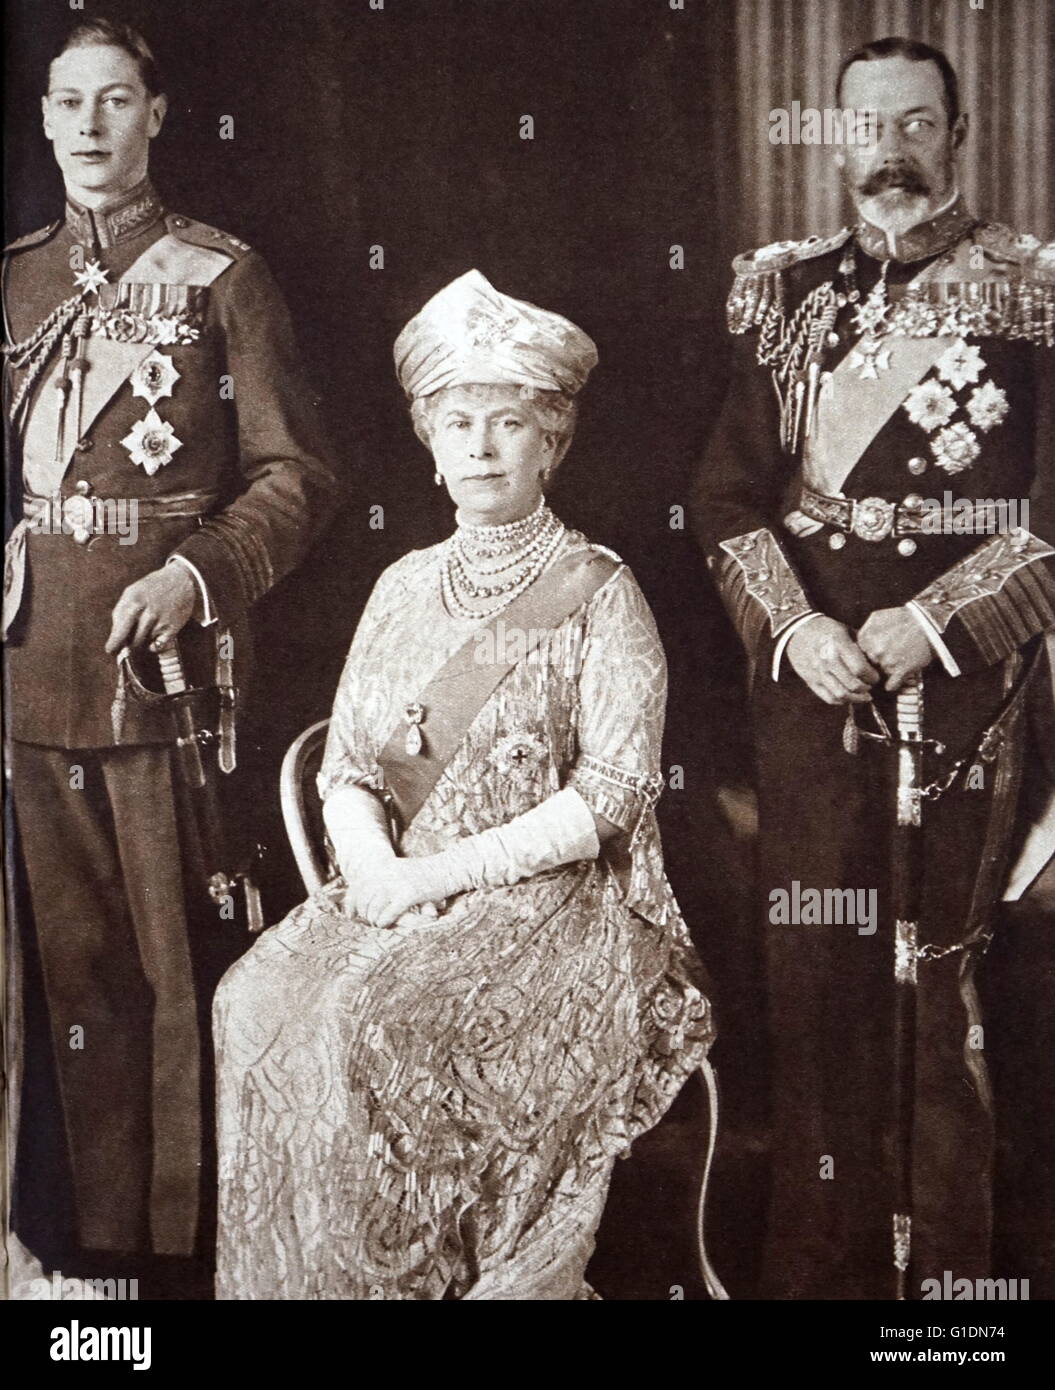 Foto von Prinz Albert Frederick Arthur George (1895-1952) mit Queen Mary von Teck (1867-1953) und King George V (1865-1936) am Tag seiner Hochzeit abgebildet. Vom 20. Jahrhundert Stockfoto